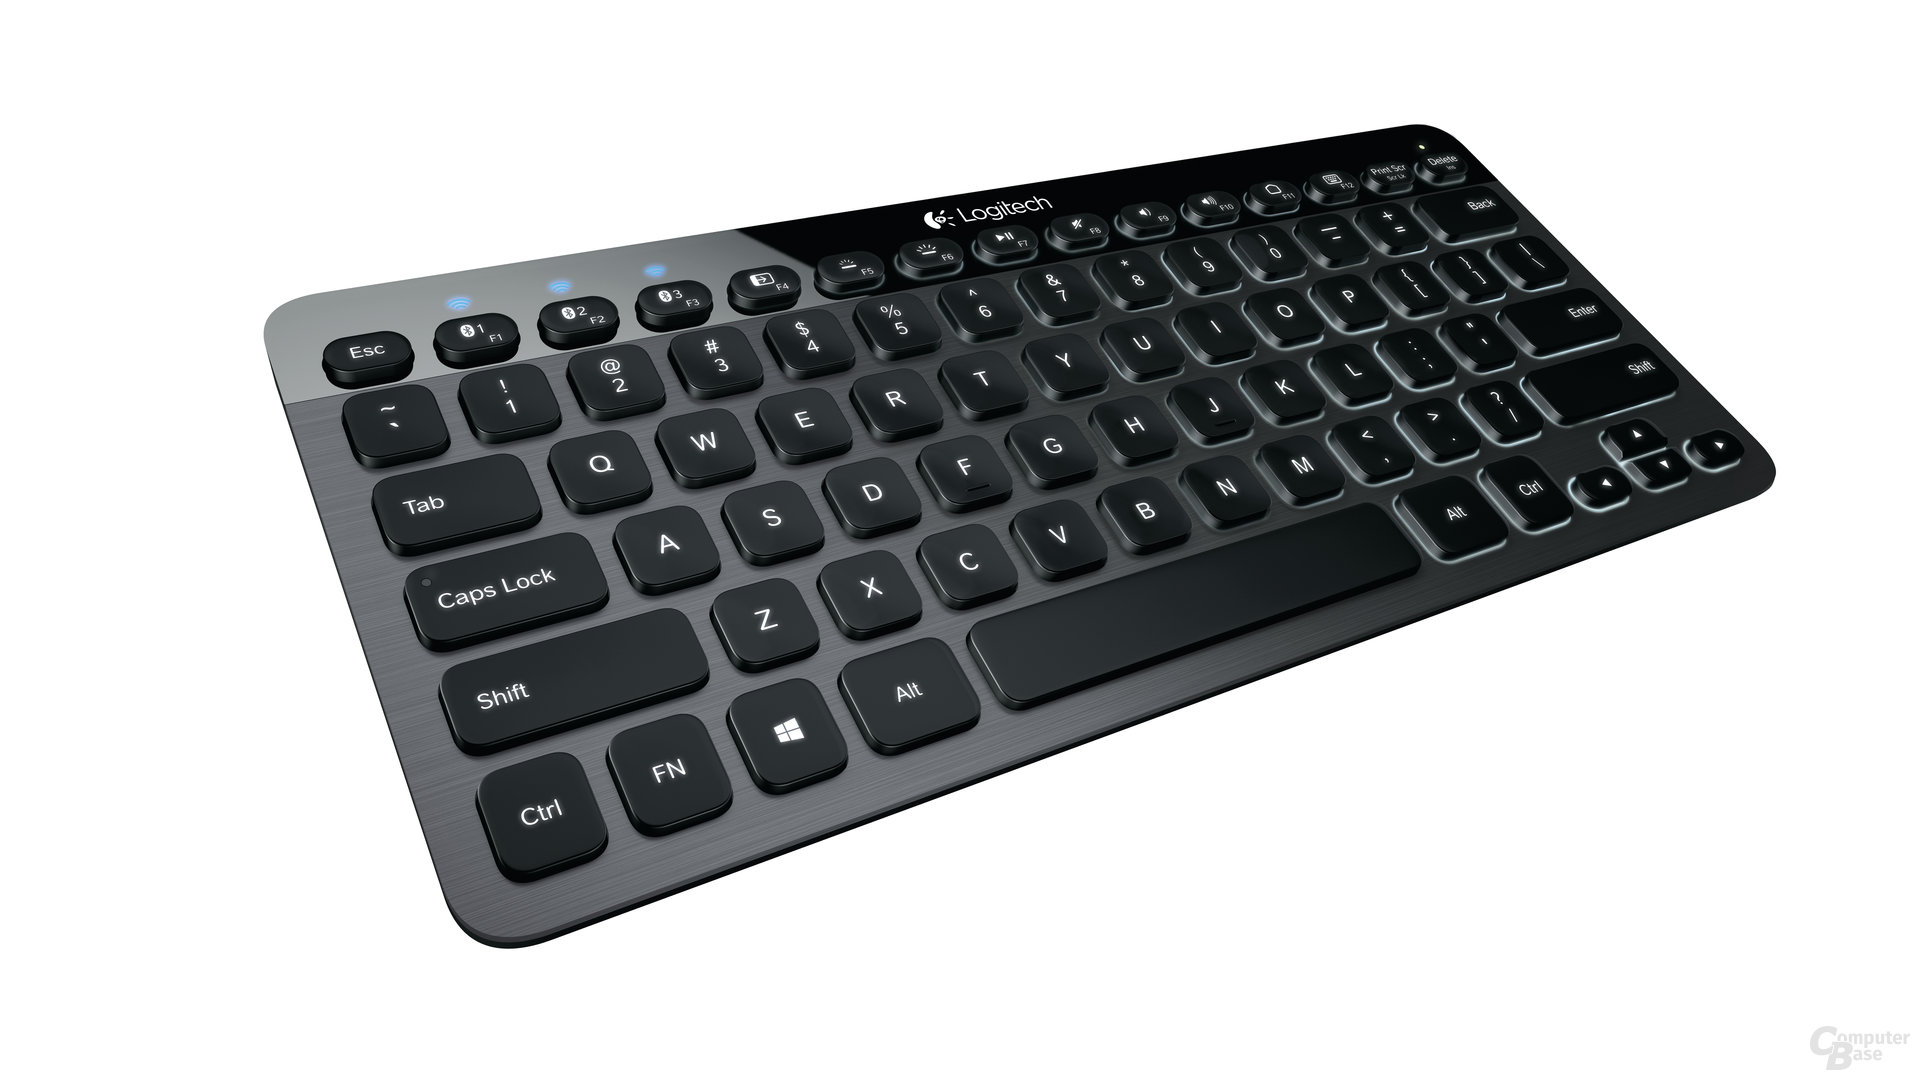 Logitech Bluetooth Illuminated Keyboard K810